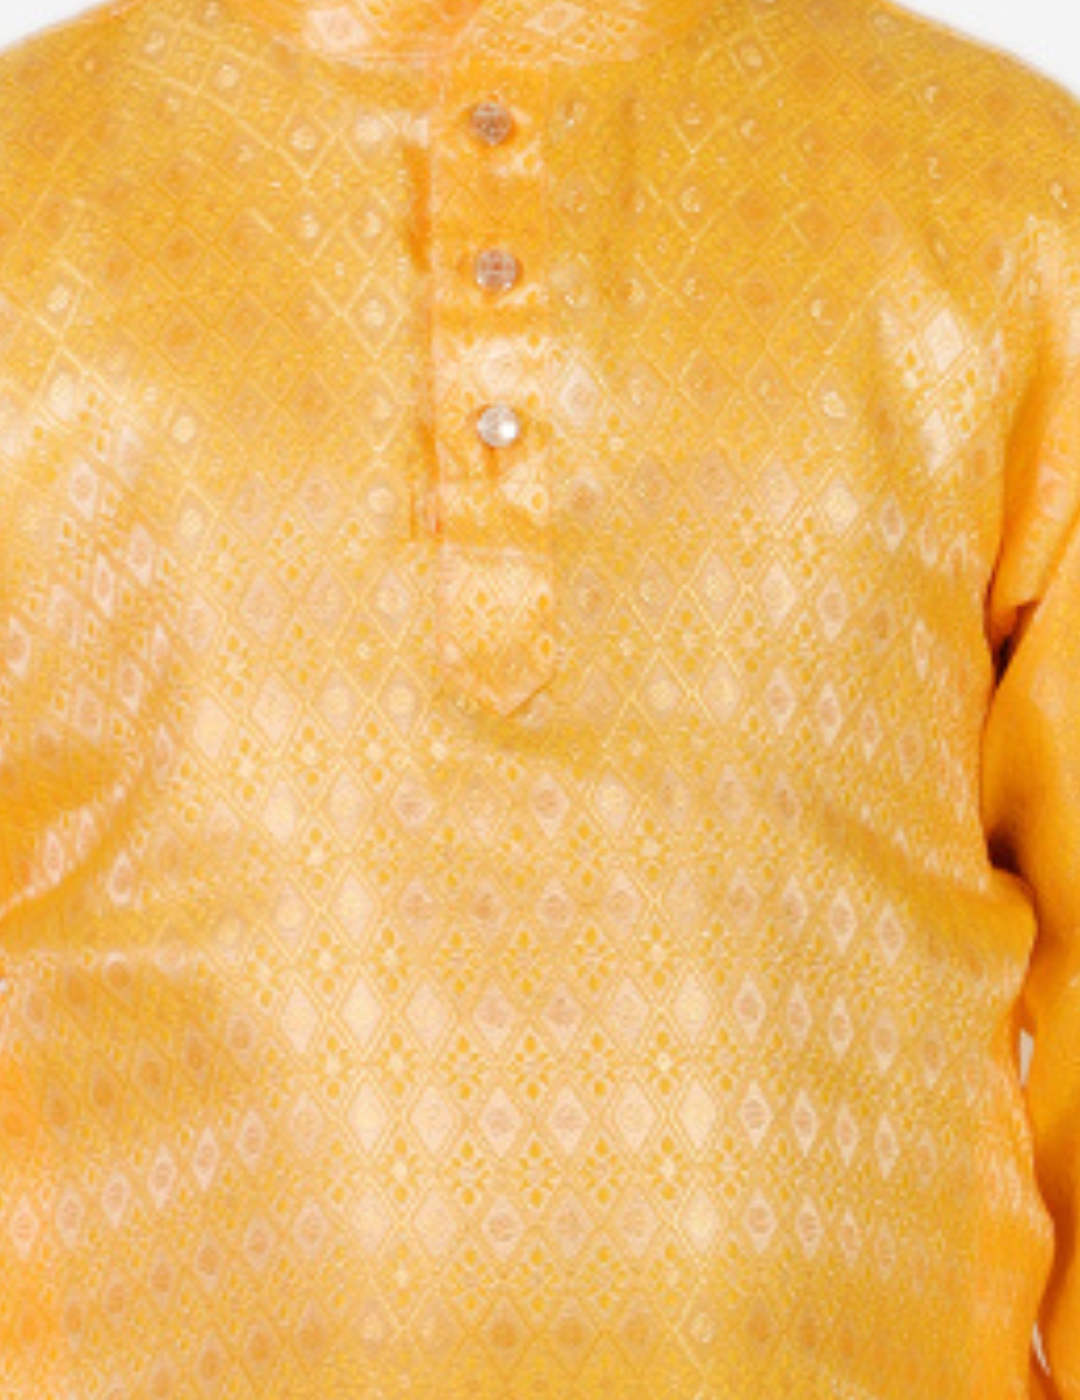 Pro Ethic Boys Kurta Pajama Set Silk Emblished Design Yellow (S-170)